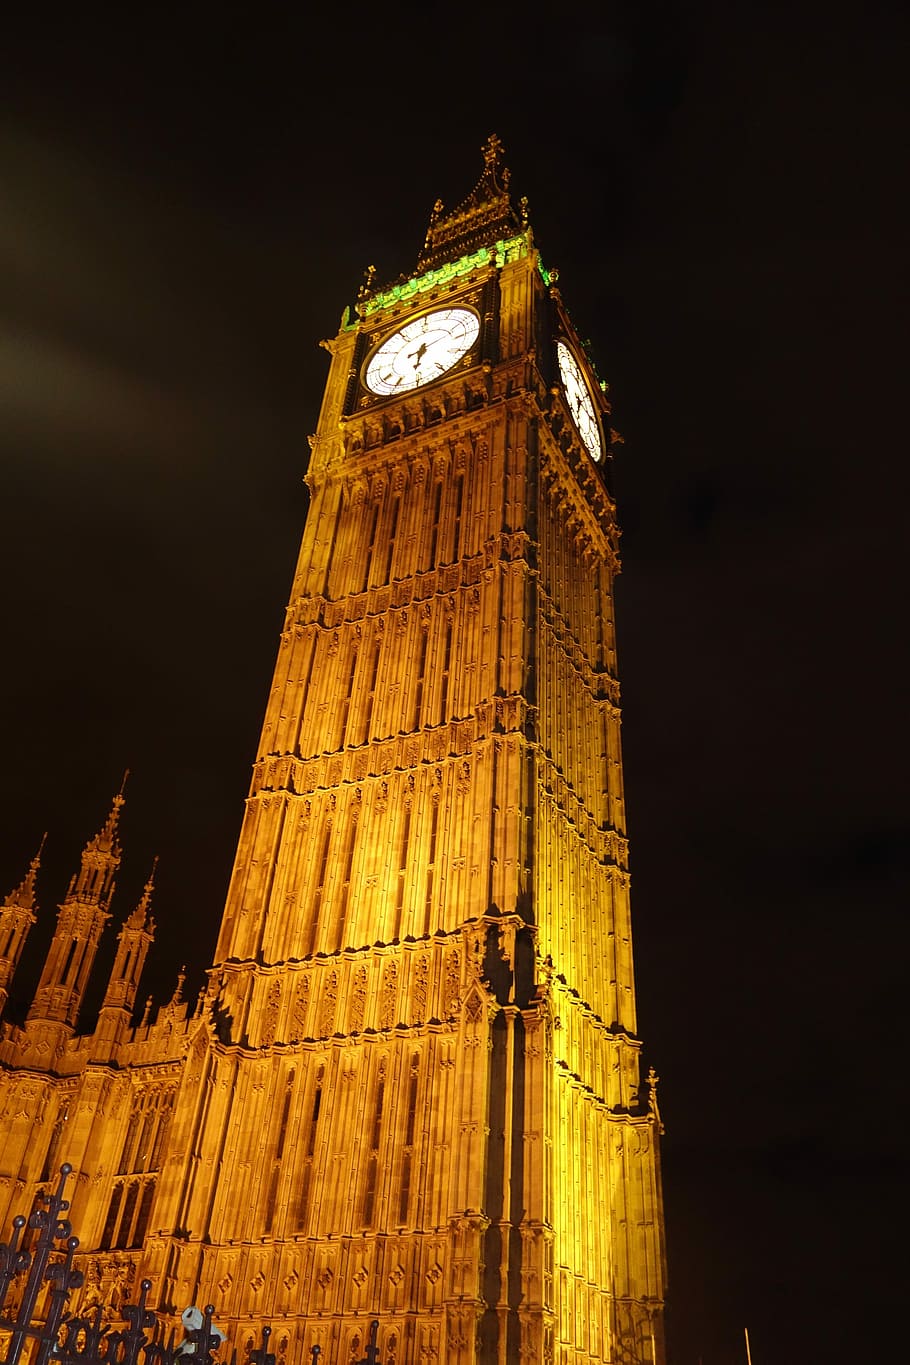 Relógio, Torre, Marco, Europa, Londres, parlamento, monumento, Inglaterra, Big Ben, casas do Parlamento - Londres